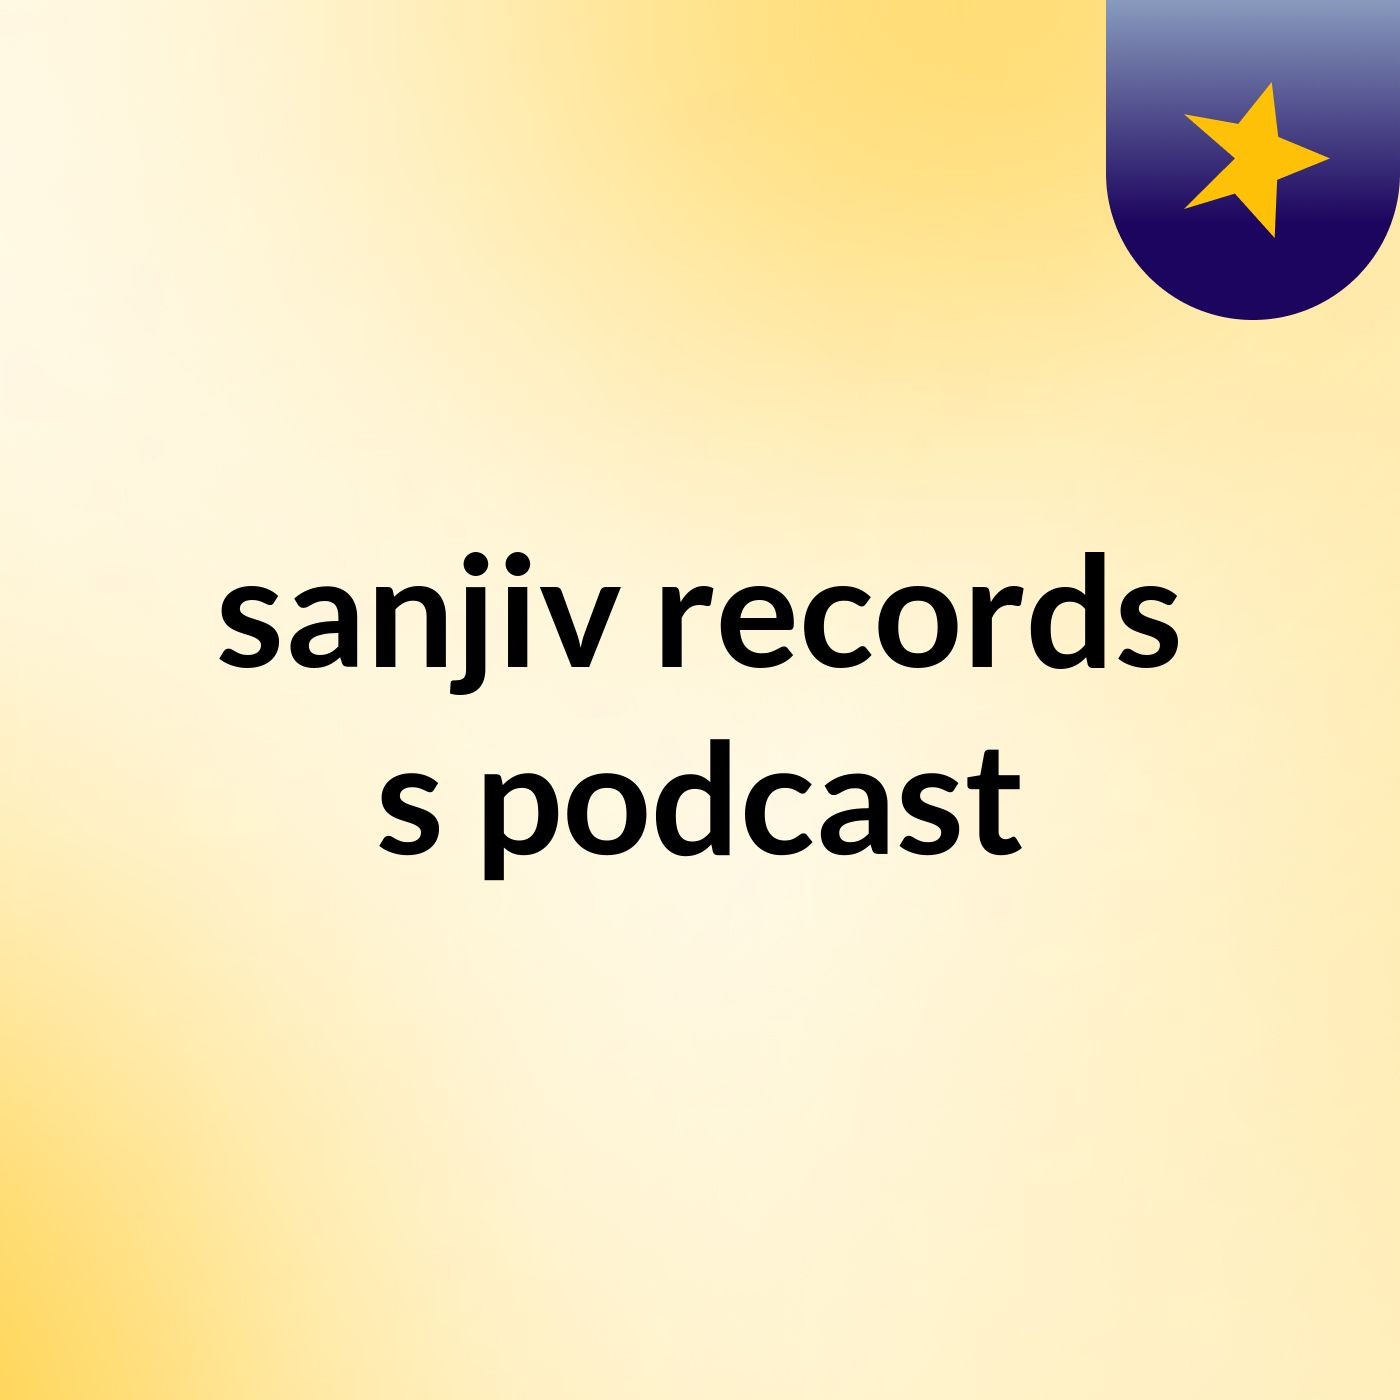 sanjiv records's podcast